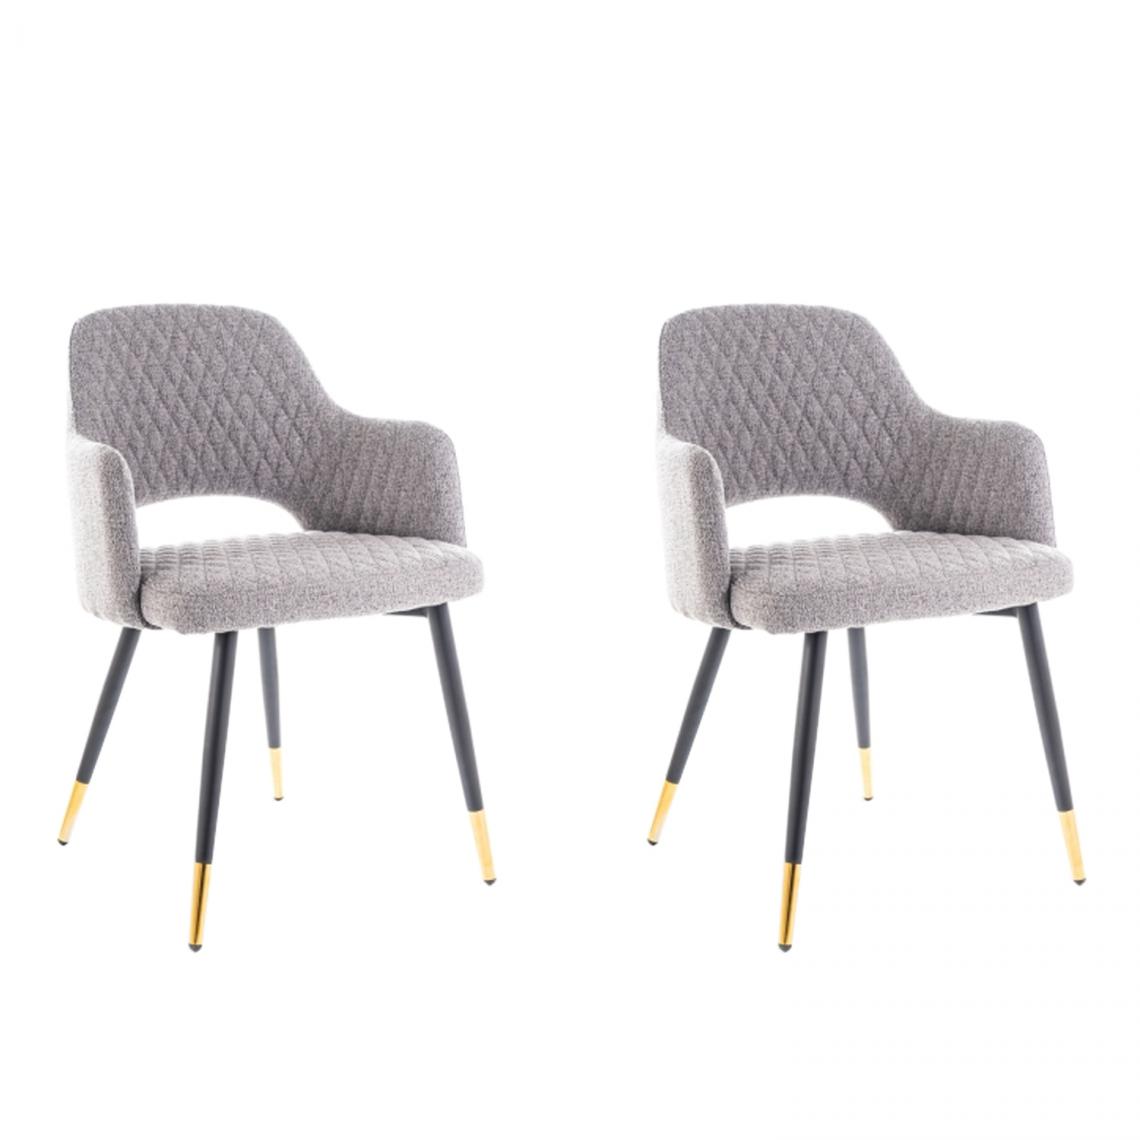 Hucoco - FRANGO - Lot de 2 chaises avec accoudoirs - 82x55x45 cm - Tissu haute qualité - Style scandinave - Gris - Chaises